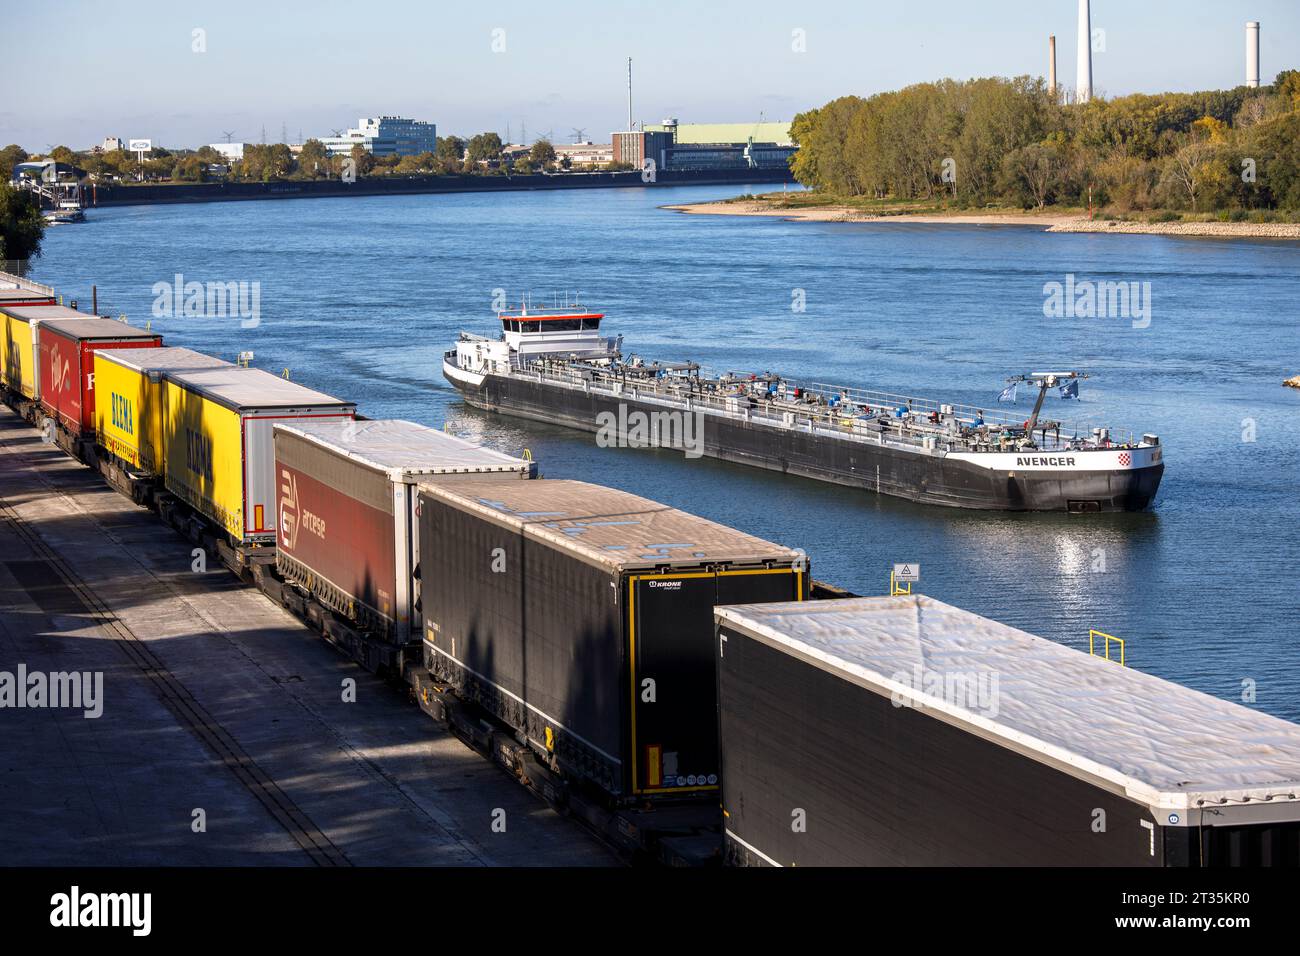 Frachtschiff, das in den Rheinhafen Niehl einfährt, LKW-Anhänger stehen am Westkai-Terminal, Köln, Deutschland. Frachtschiff faehrt in den Niehler Hafen, Stockfoto